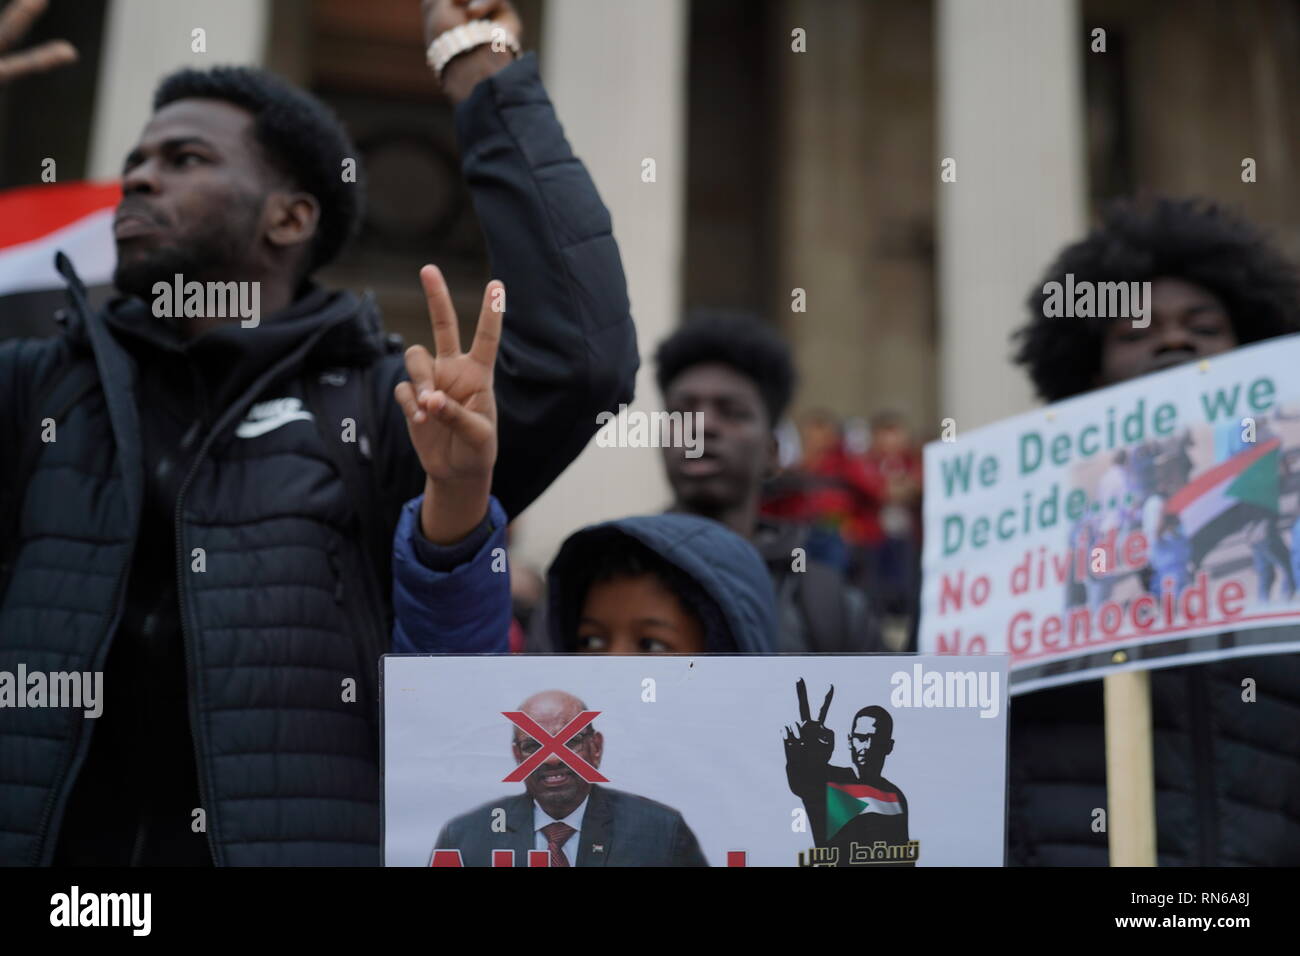 Trafalgar Square, London, UK. 16. Februar 2019. Fotografie in London, während eines Protestes durch die sudanesische Bevölkerung in Großbritannien organisiert, um das sudanesische Regime zu stürzen, hat seit etwa 30 Jahren verursacht, zivile Unruhen und Genozide vor allem im Süden des Sudan, die jetzt ihre Unabhängigkeit hält regierte. Die Grafschaft insgesamt wurde von der Gerechtigkeit, die von Hyperinflation zu rechtswidrigen Haft erlitten. Credit: Ioannis Toutoungi/Alamy leben Nachrichten Stockfoto